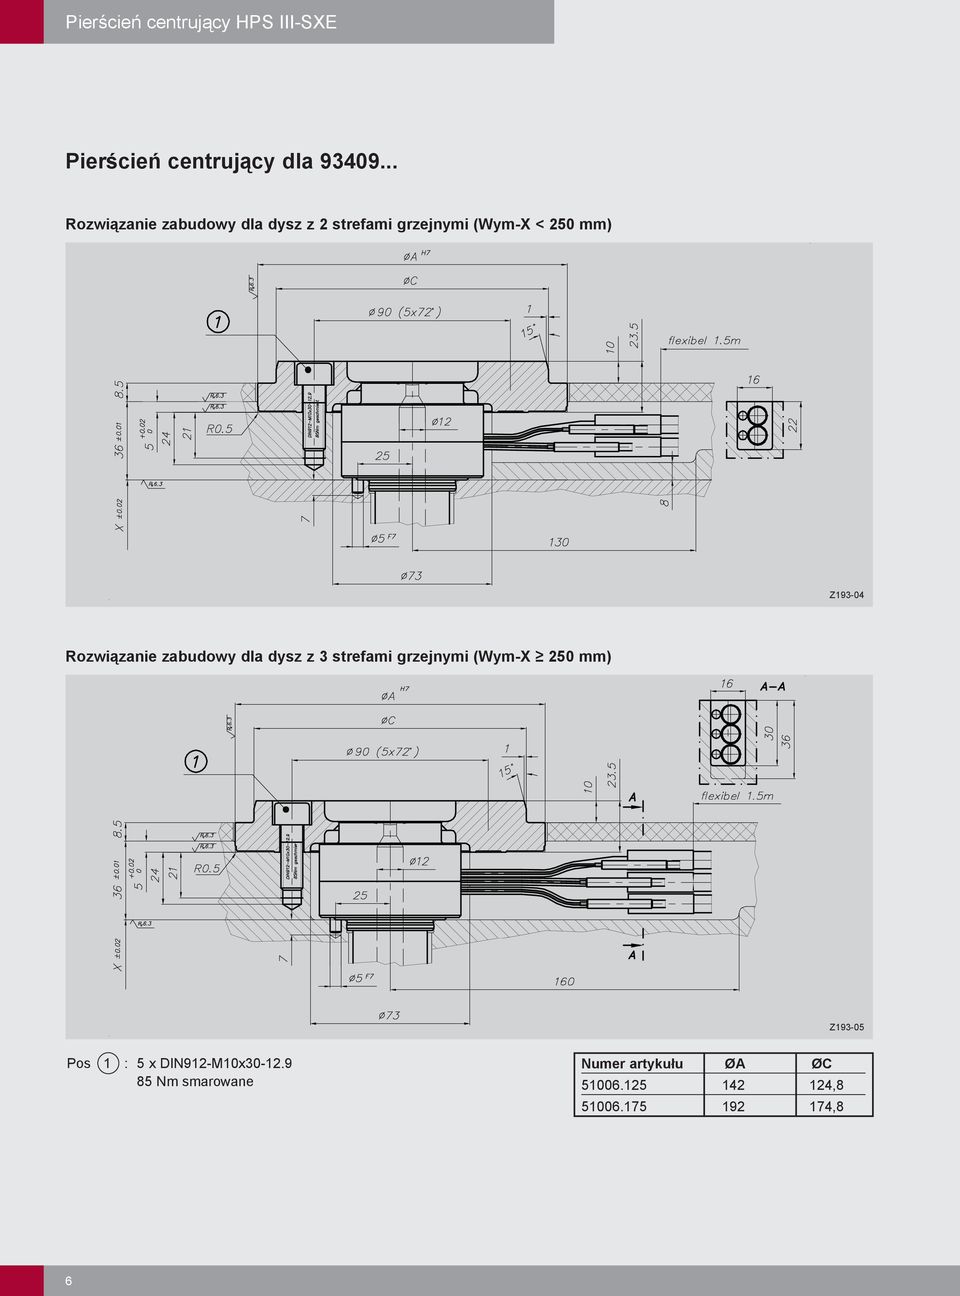 Rozwiązanie zabudowy dla dysz z 3 strefami grzejnymi (Wym-X 250 mm) Z193-05 Pos 1